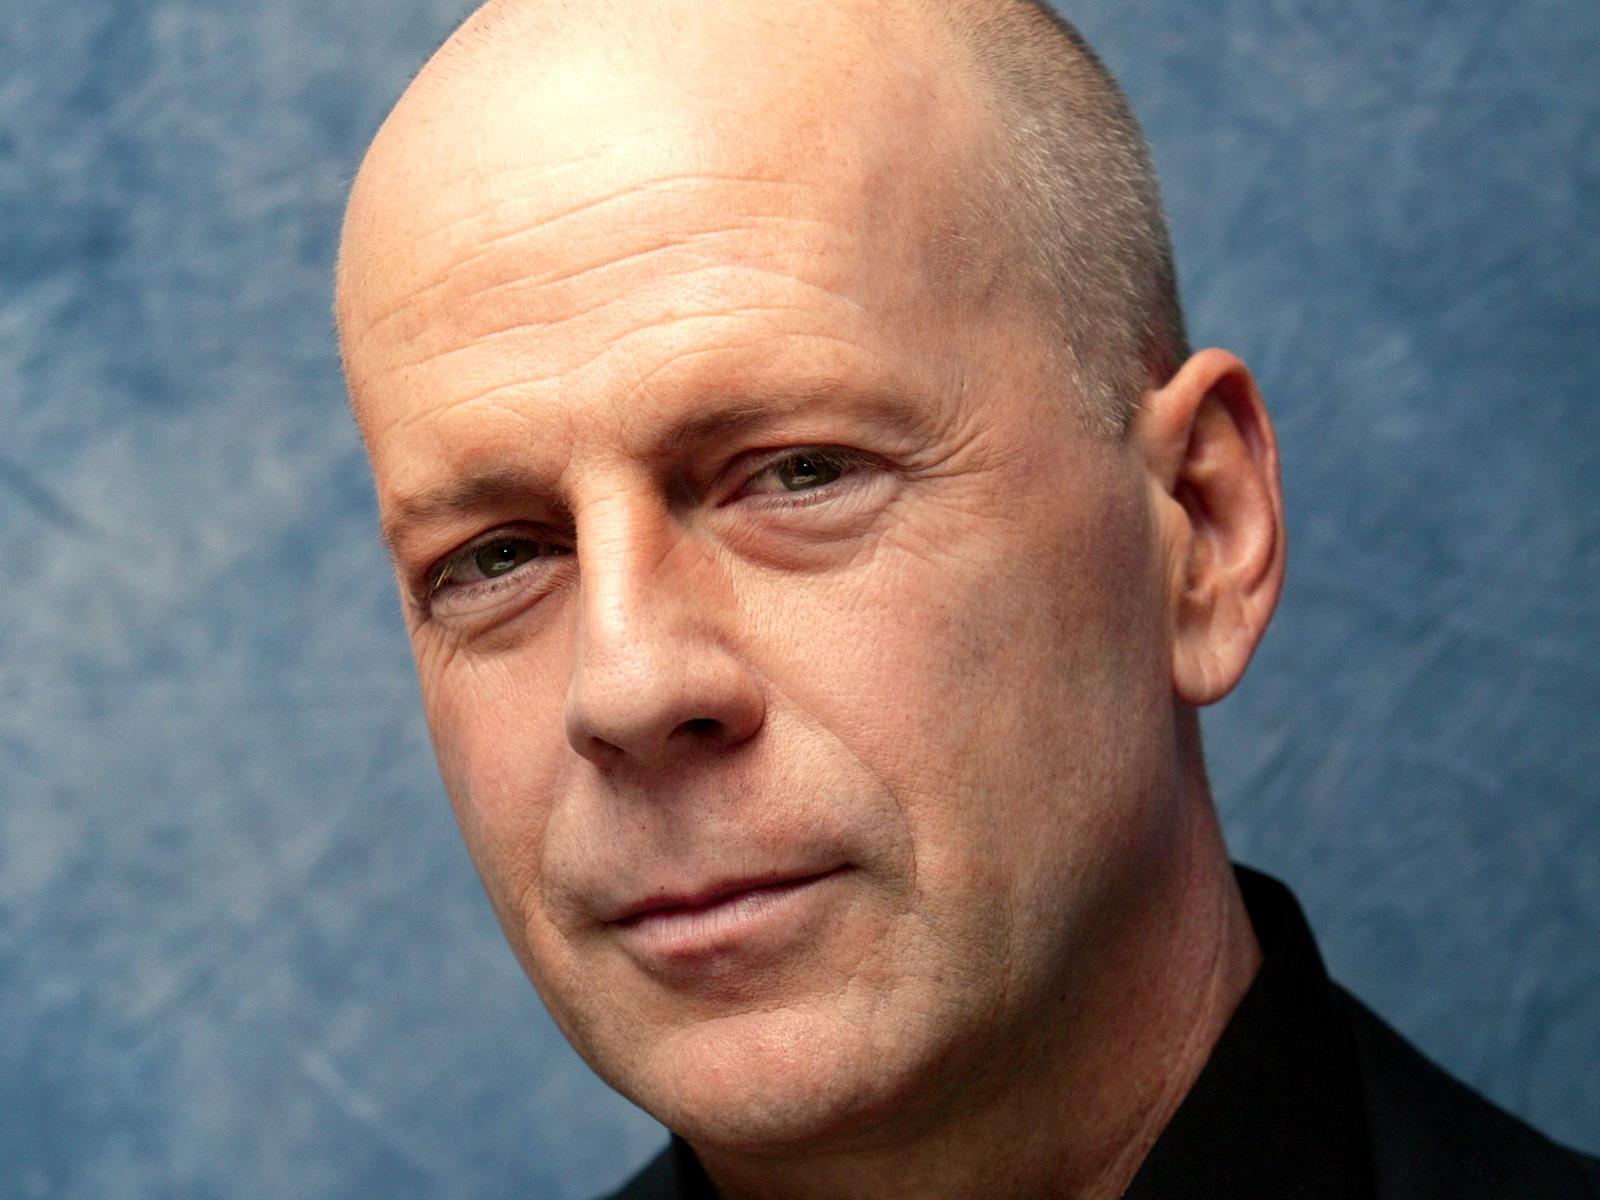 Muchísimas felicidades a Bruce Willis que hoy cumple 60 añazos!!
Happy birthday Bruce! 